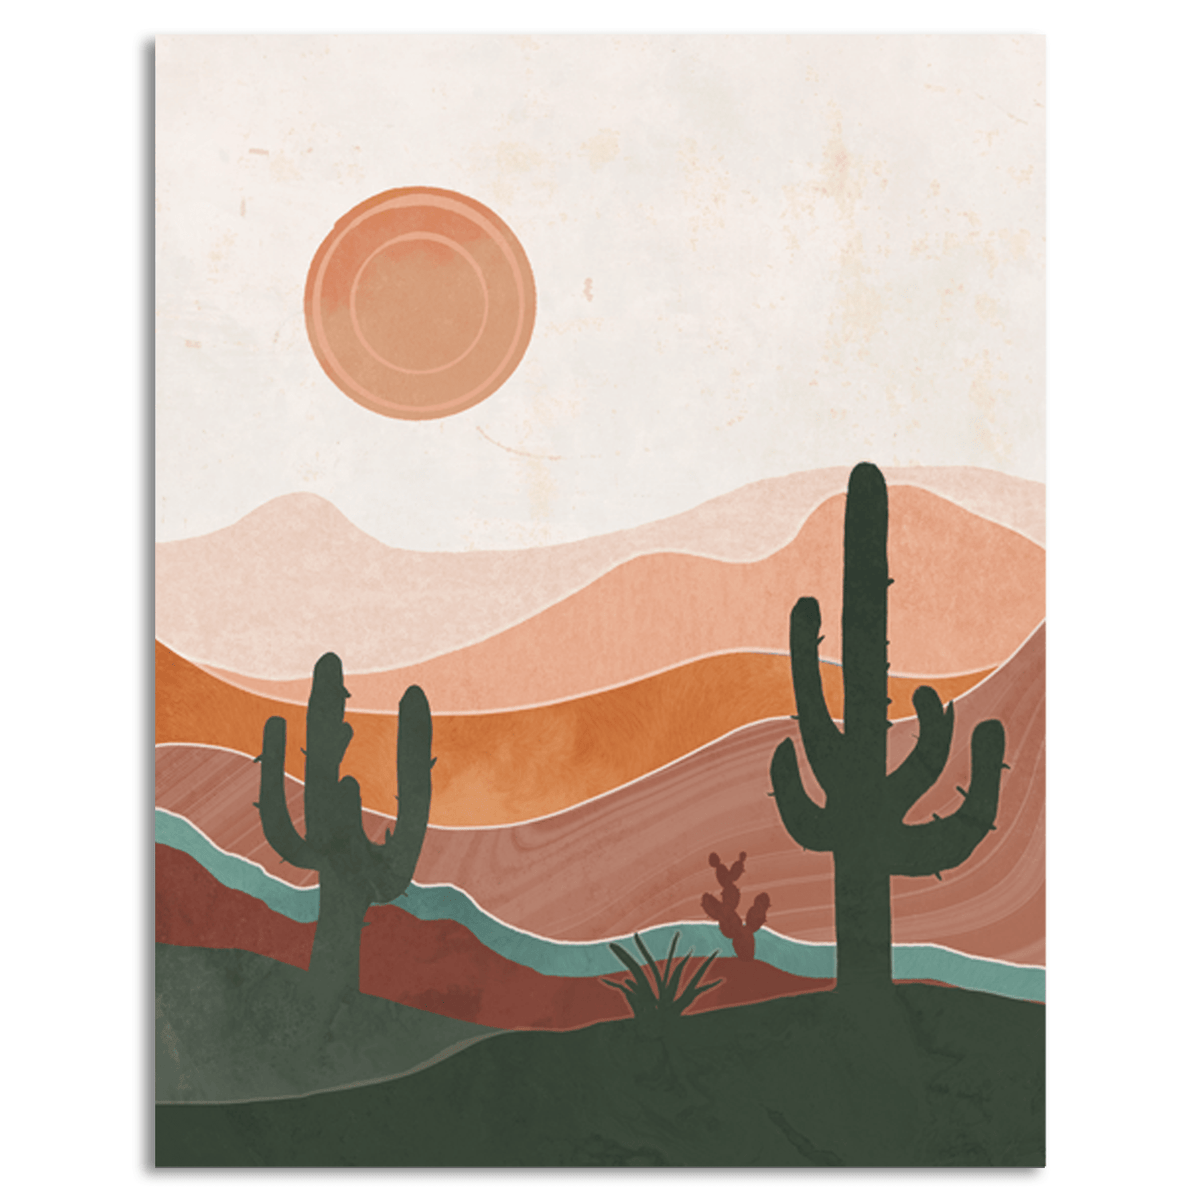 Southwest desert landscape